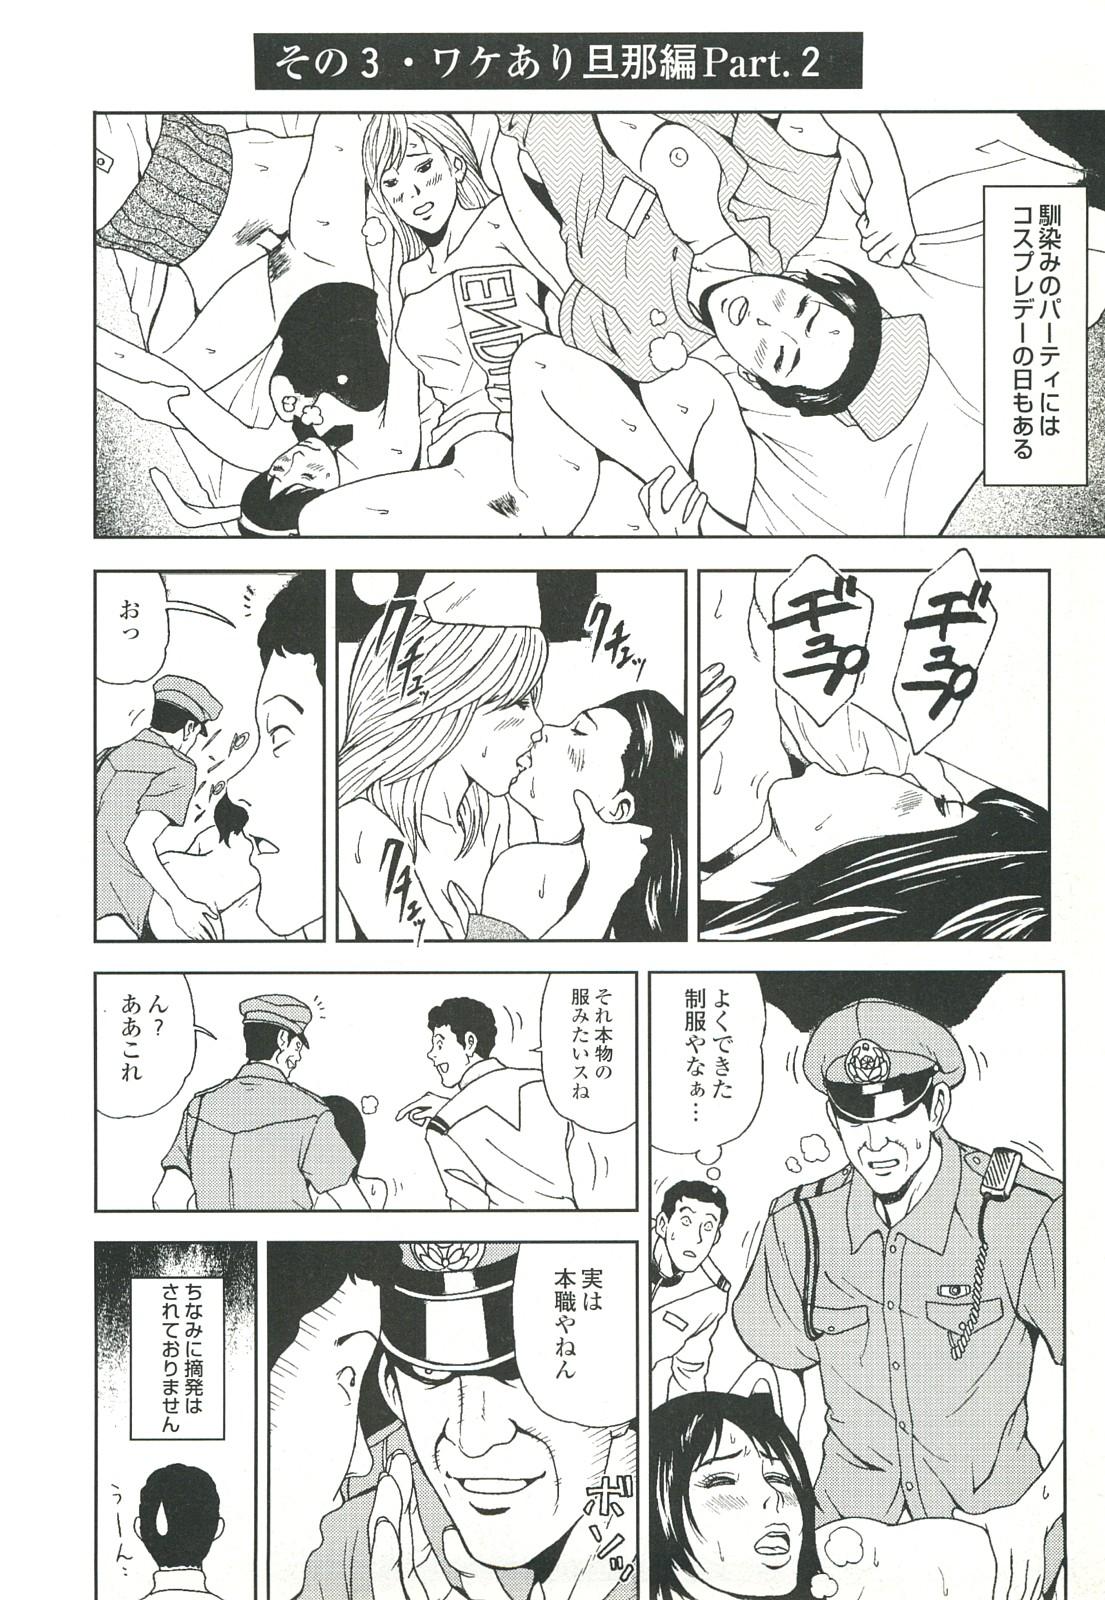 コミック裏モノJAPAN Vol.18 今井のりたつスペシャル号 65